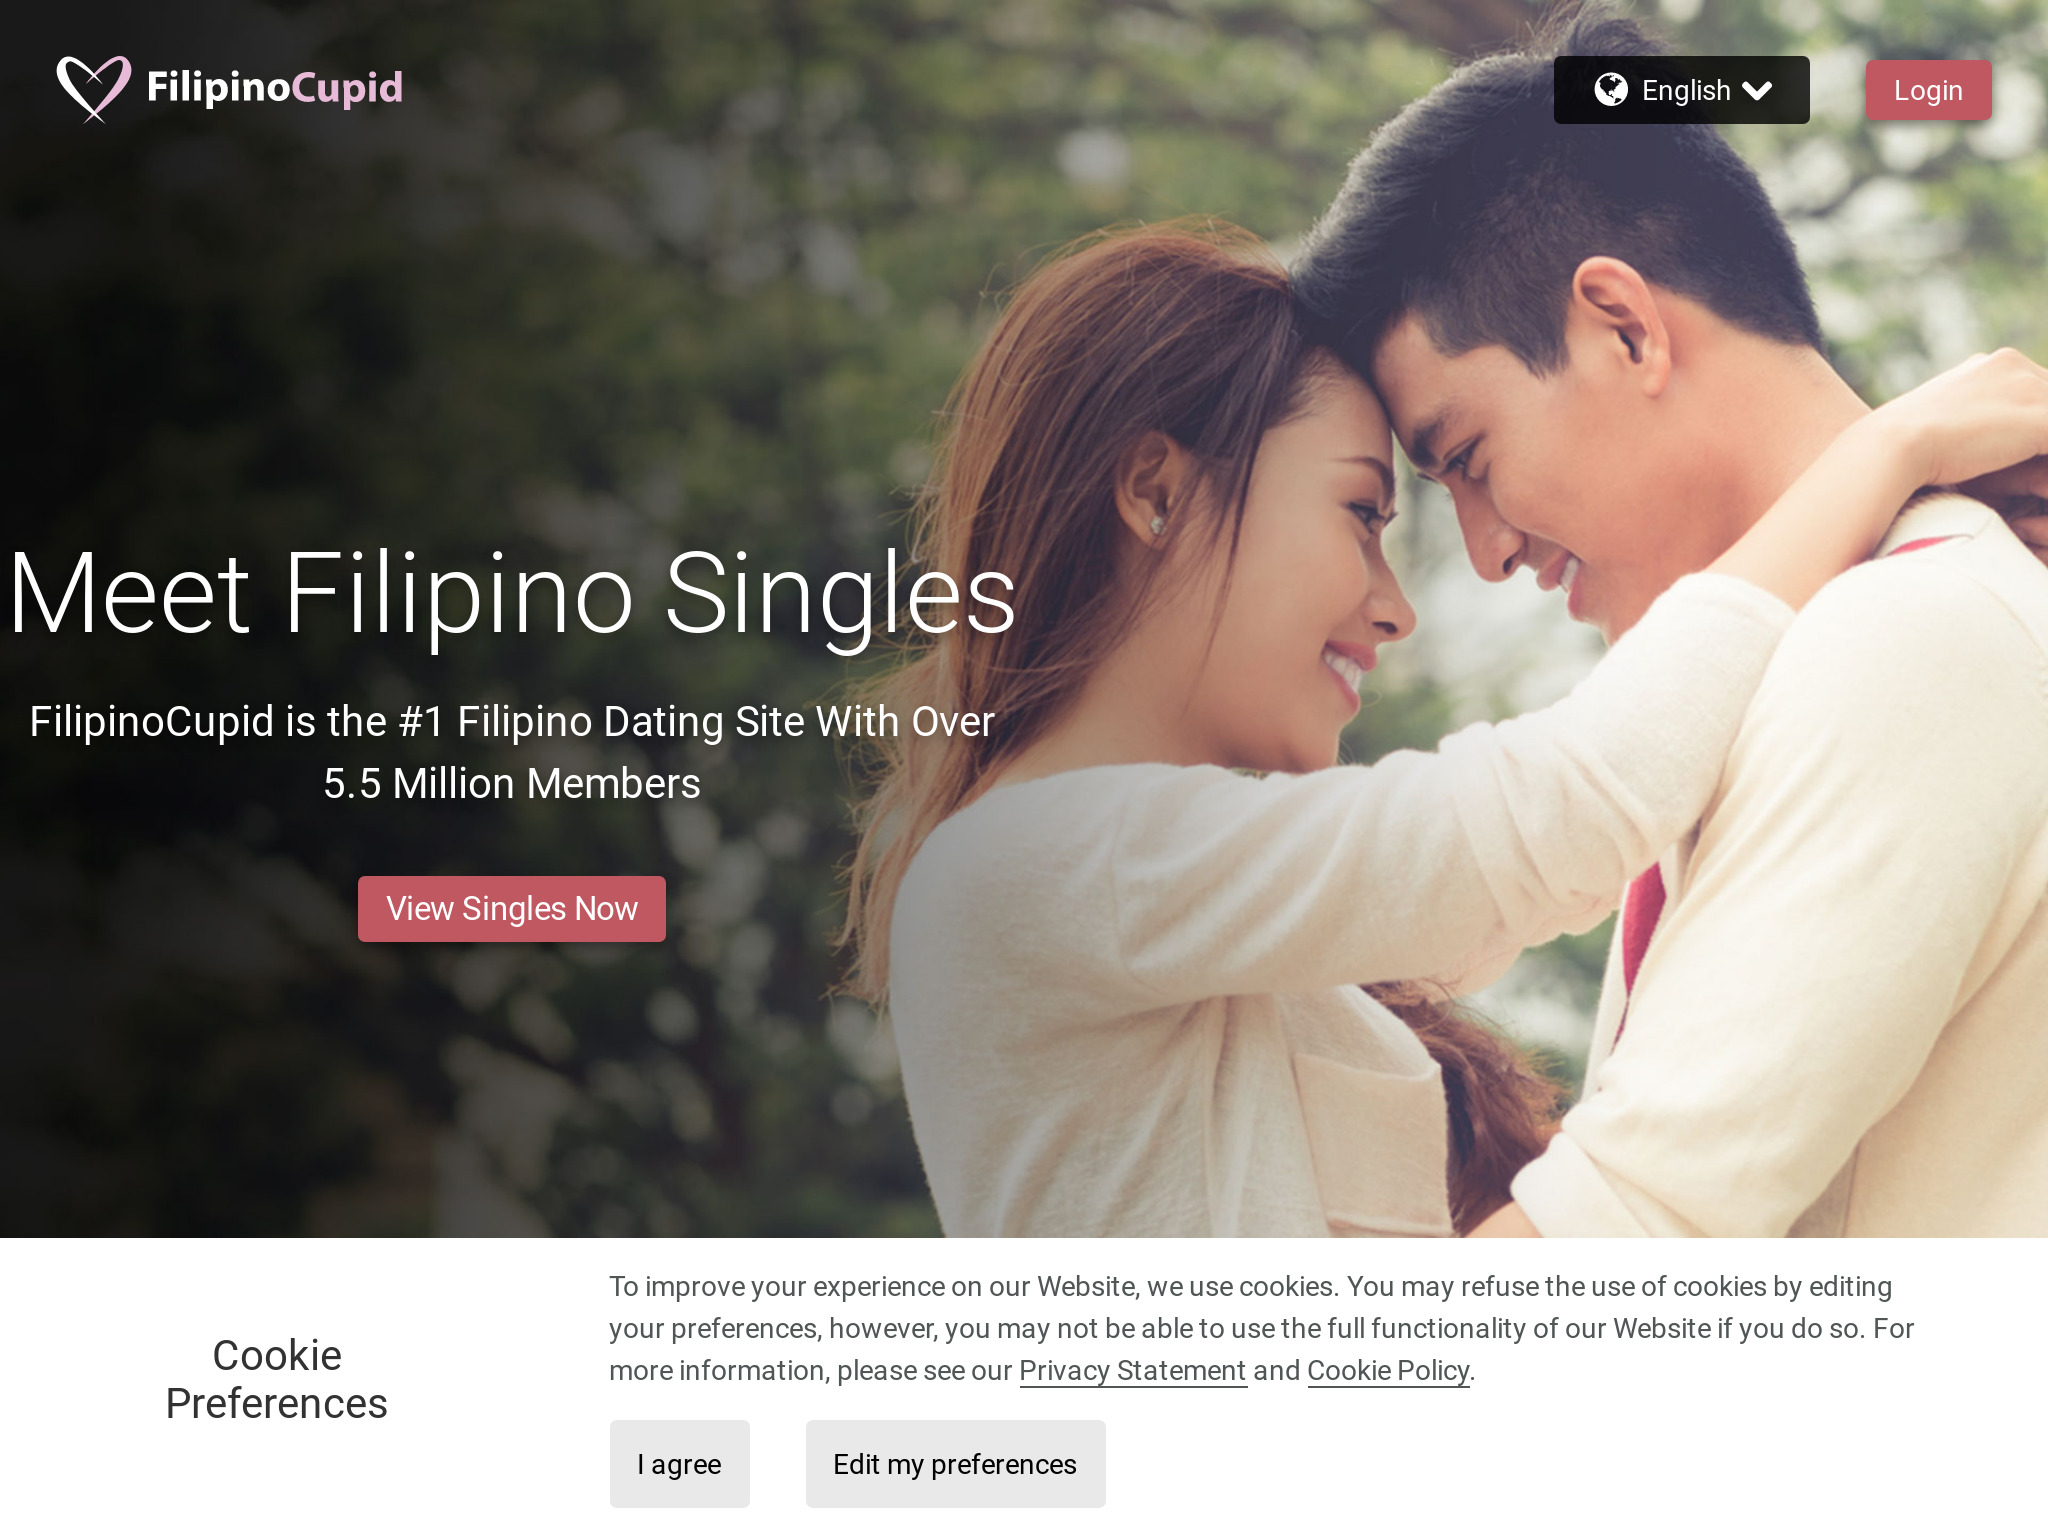 FilipinoCupid Review: Krijg de feiten voordat u zich aanmeldt!